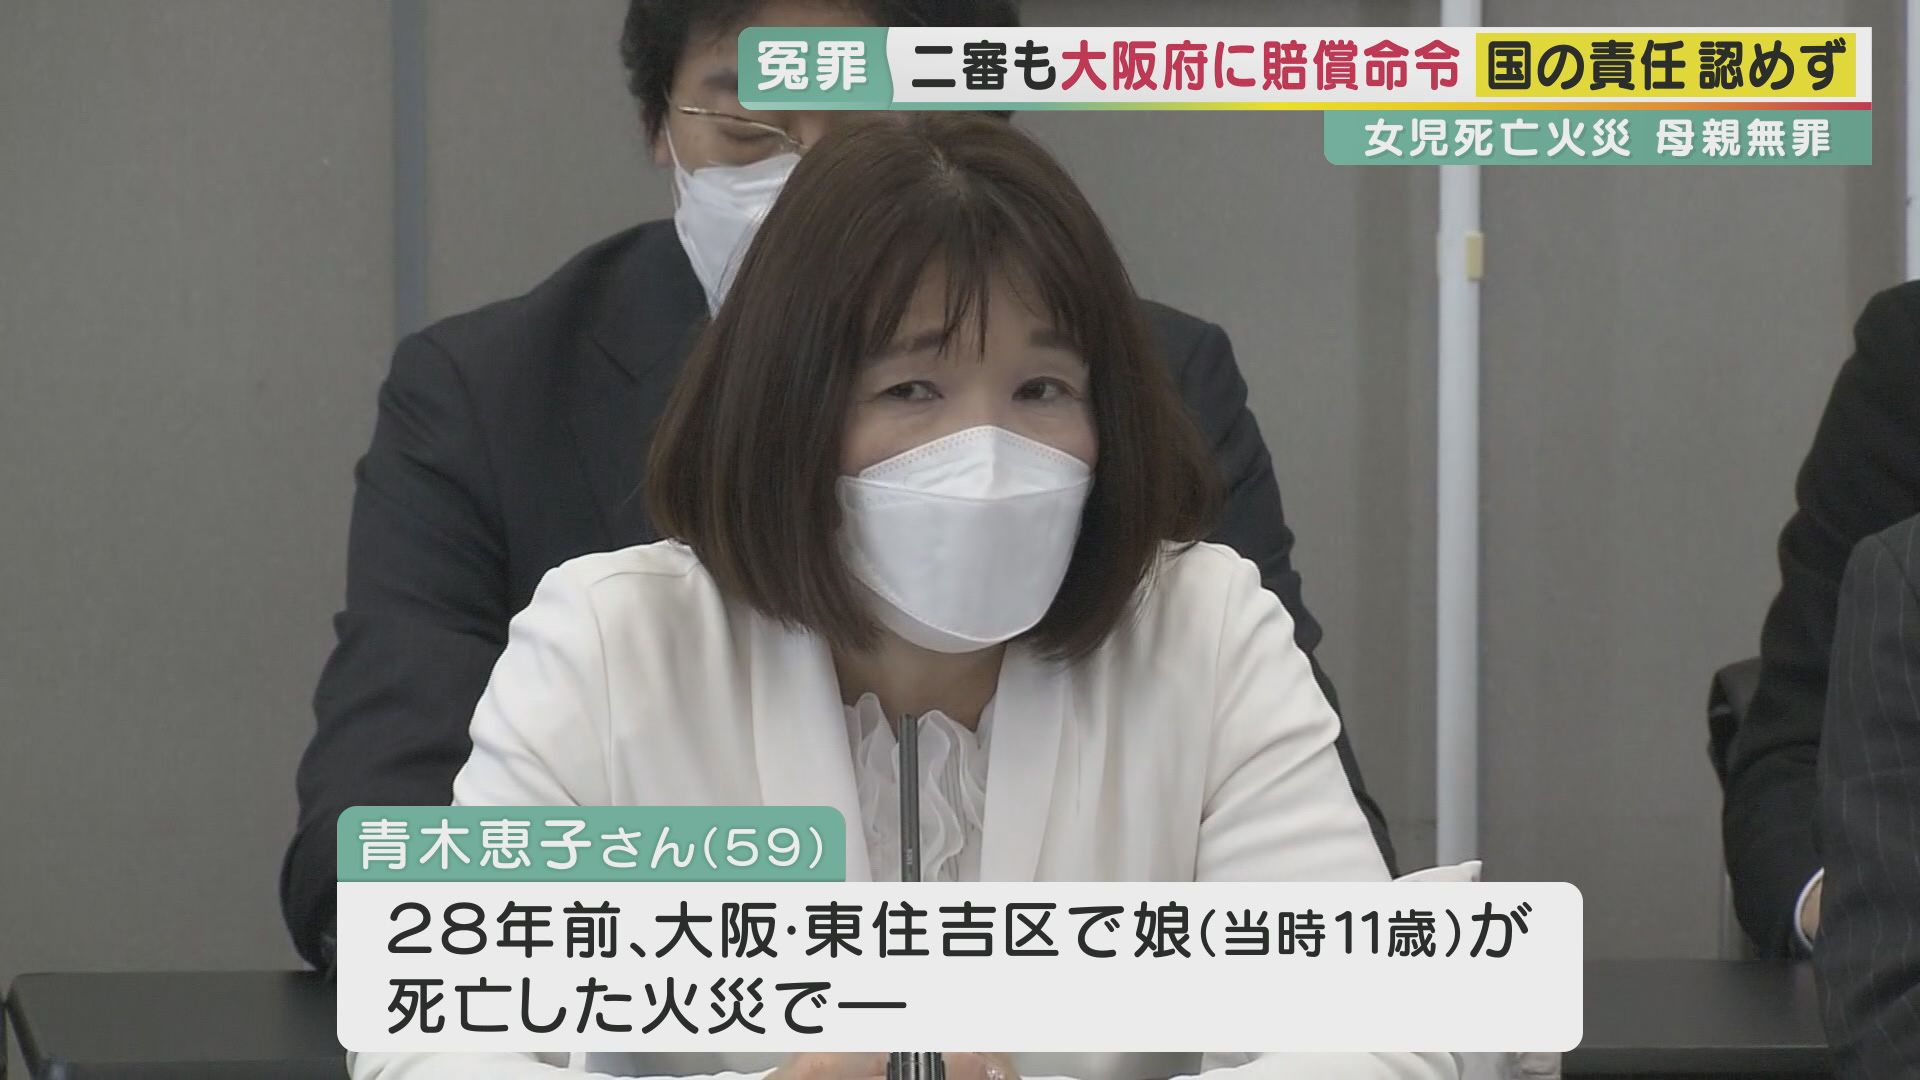 控訴審も国の責任認めず 火災で女児死亡の母・青木恵子さん冤罪事件「冤罪者は救われない」 大阪高裁